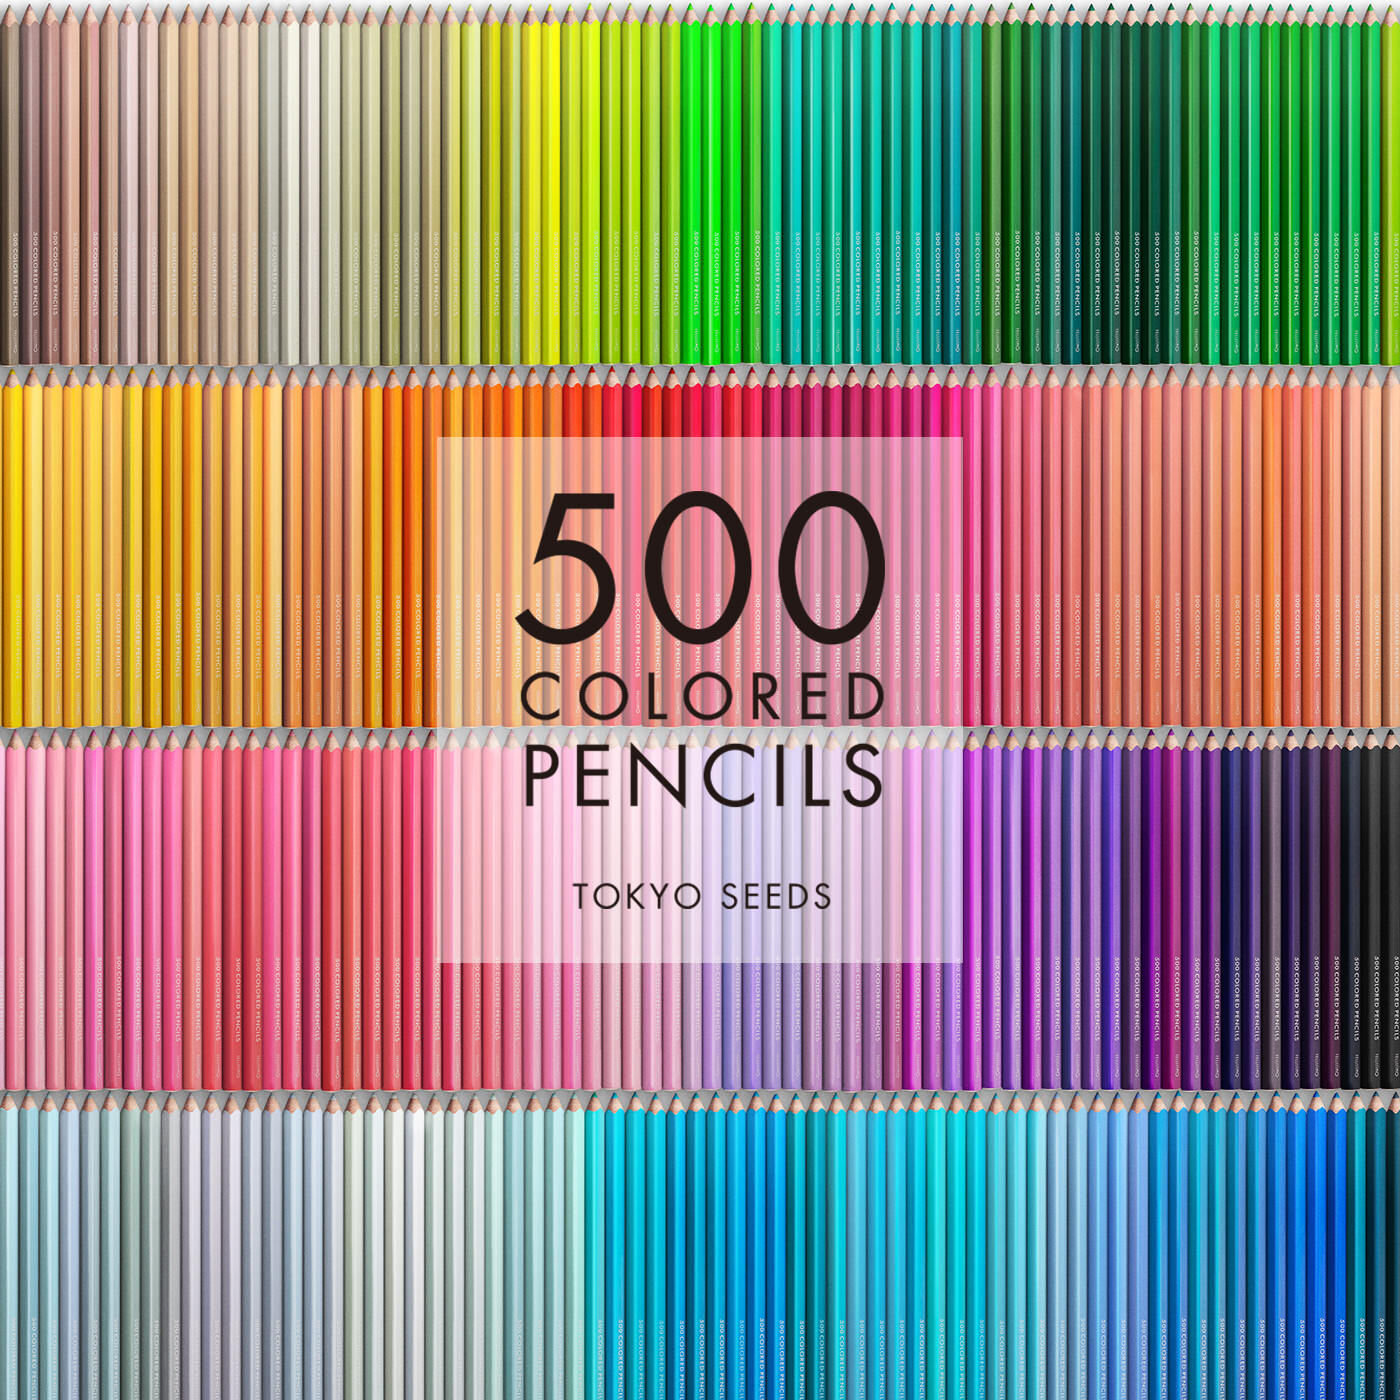 Real Stock|【91/500 PURPLE SAPPHIRE】500色の色えんぴつ TOKYO SEEDS|1992年、世界初の「500色」という膨大な色数の色えんぴつが誕生して以来、その販売数は発売当初から合わせると、世界55ヵ国10万セット以上。今回、メイド・イン・ジャパンにこだわり、すべてが新しく生まれ変わって登場しました。